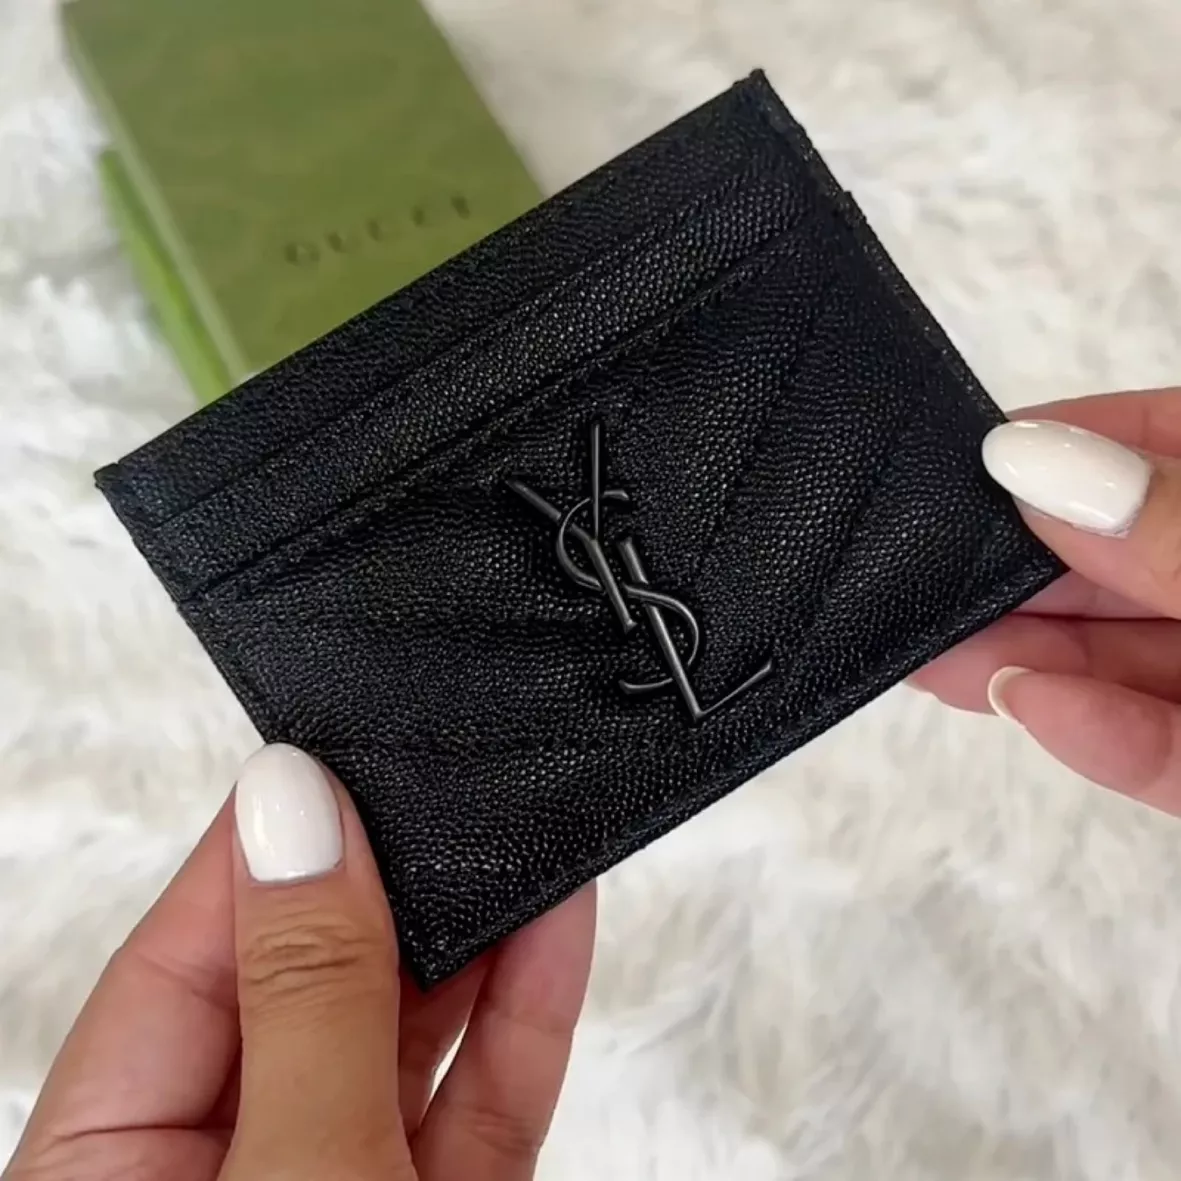 Louis Vuitton Men's Wallet Damier Graphite DHGATE UA REP Haul Unboxing 